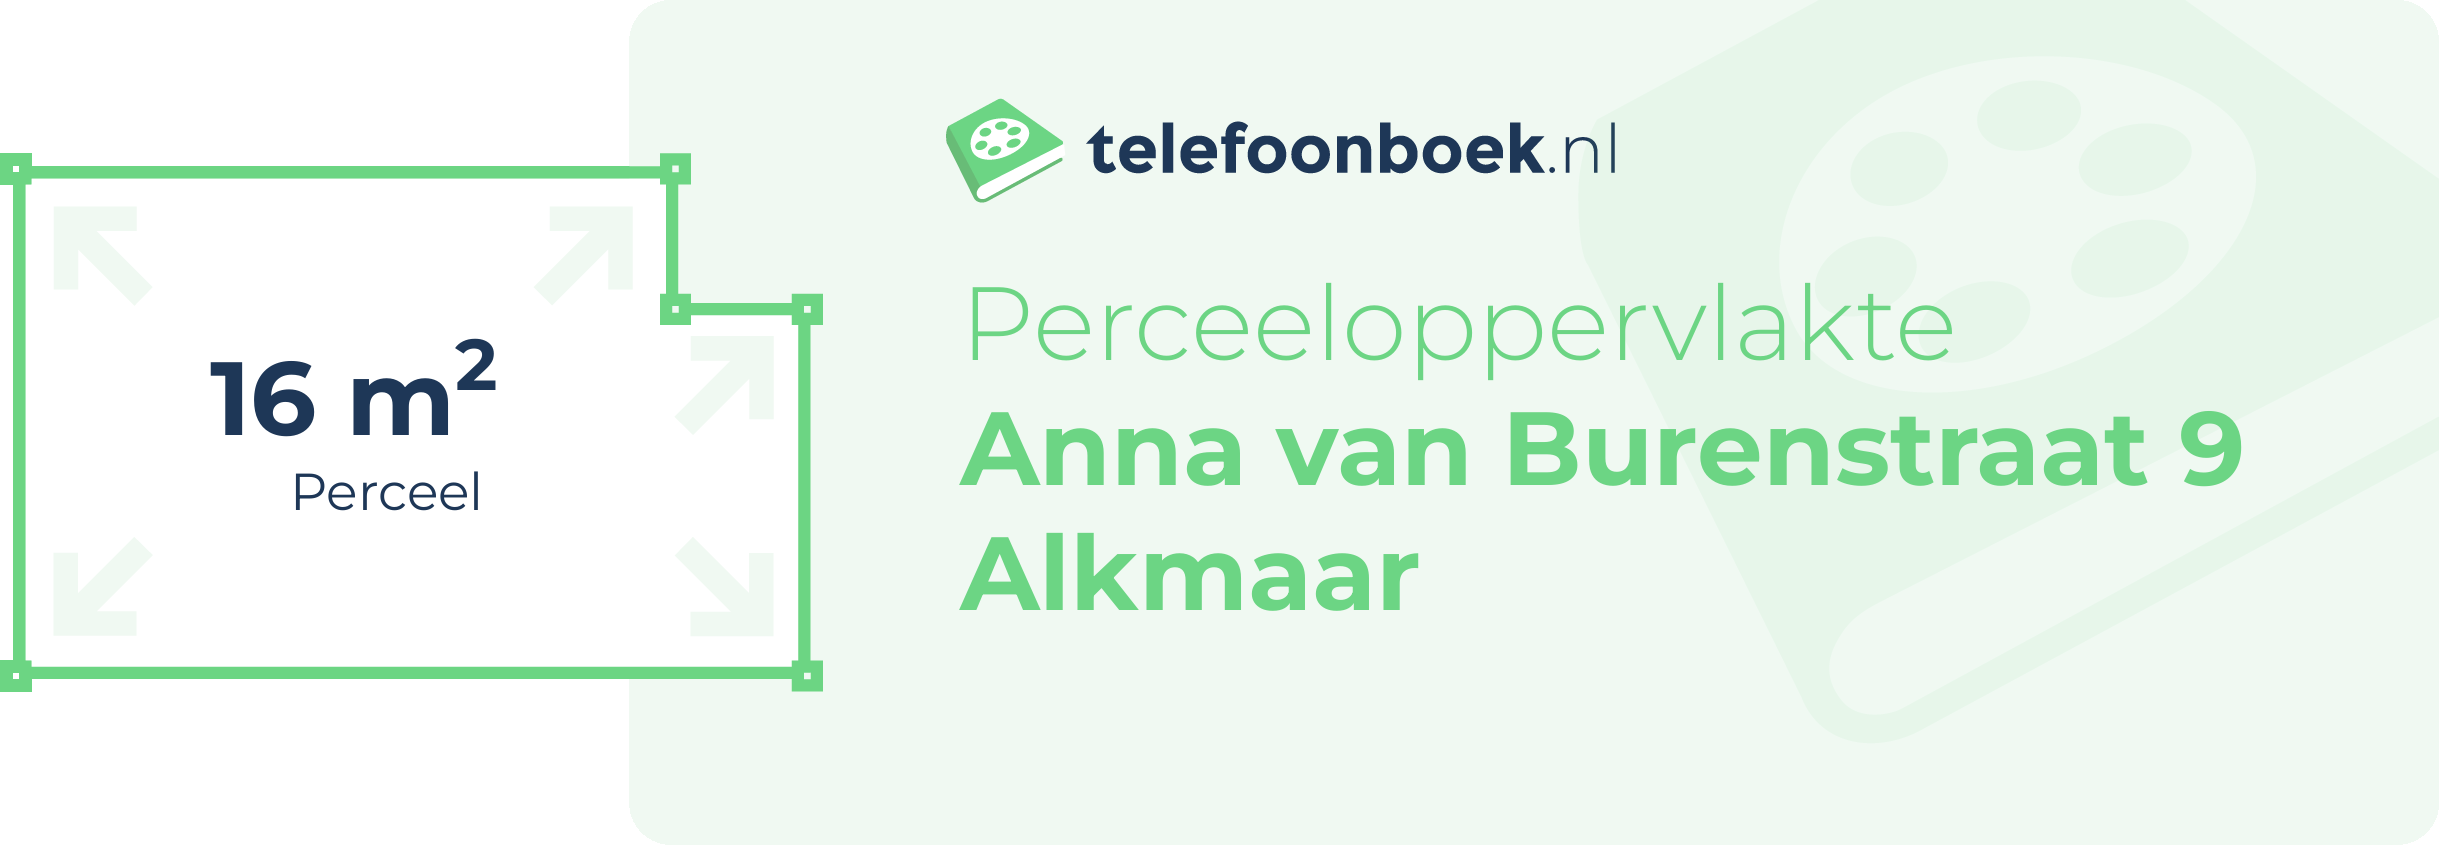 Perceeloppervlakte Anna Van Burenstraat 9 Alkmaar